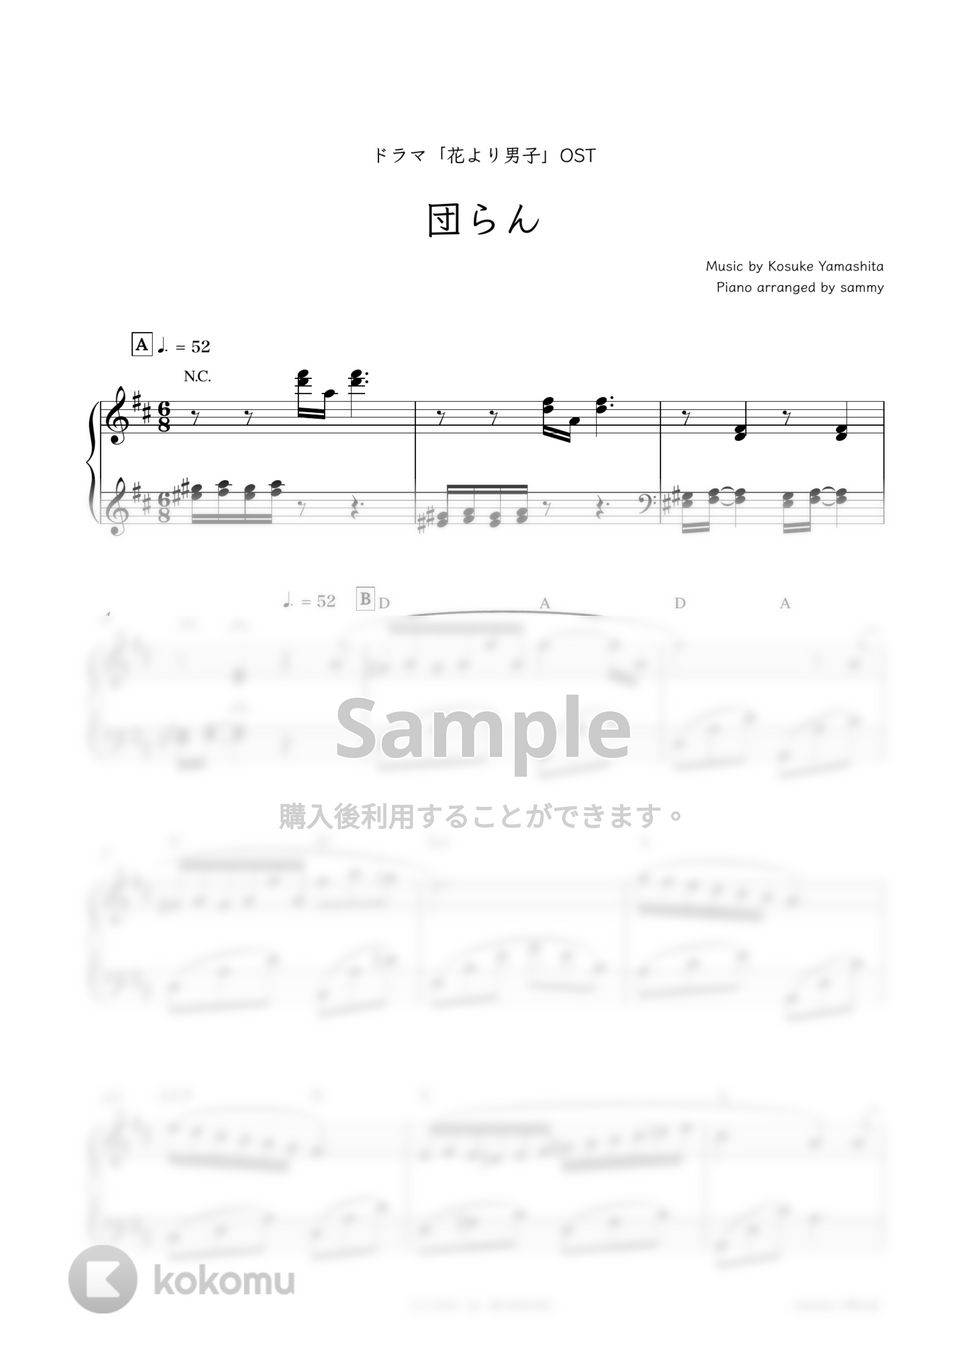 ドラマ『花より男子』OST - 団らん by sammy